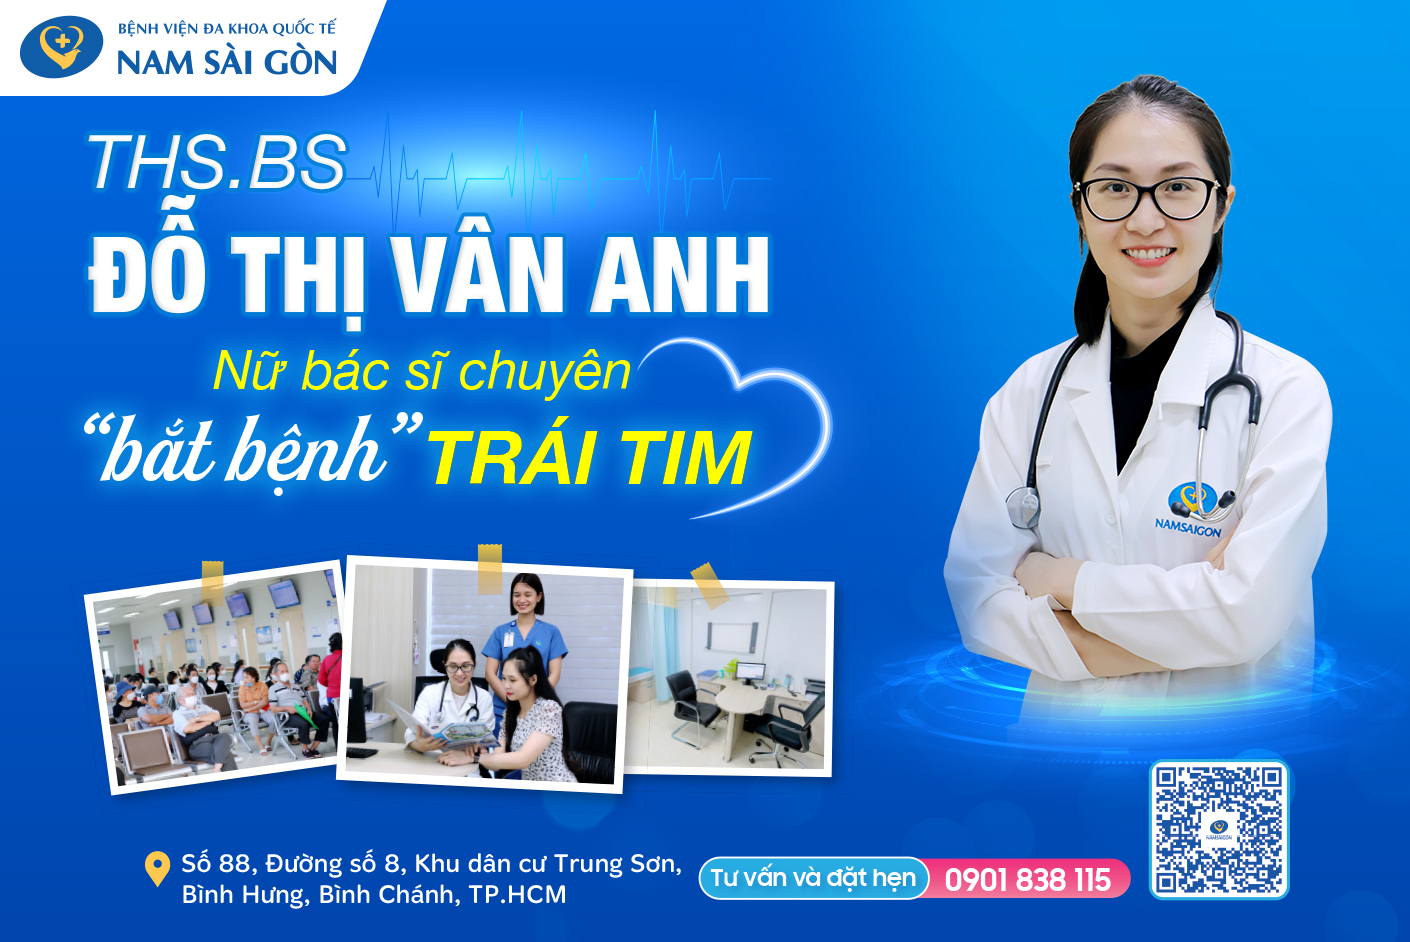 Ths. Bs Đỗ Thị Vân Anh - Nữ bác sĩ chuyên “bắt bệnh” trái tim